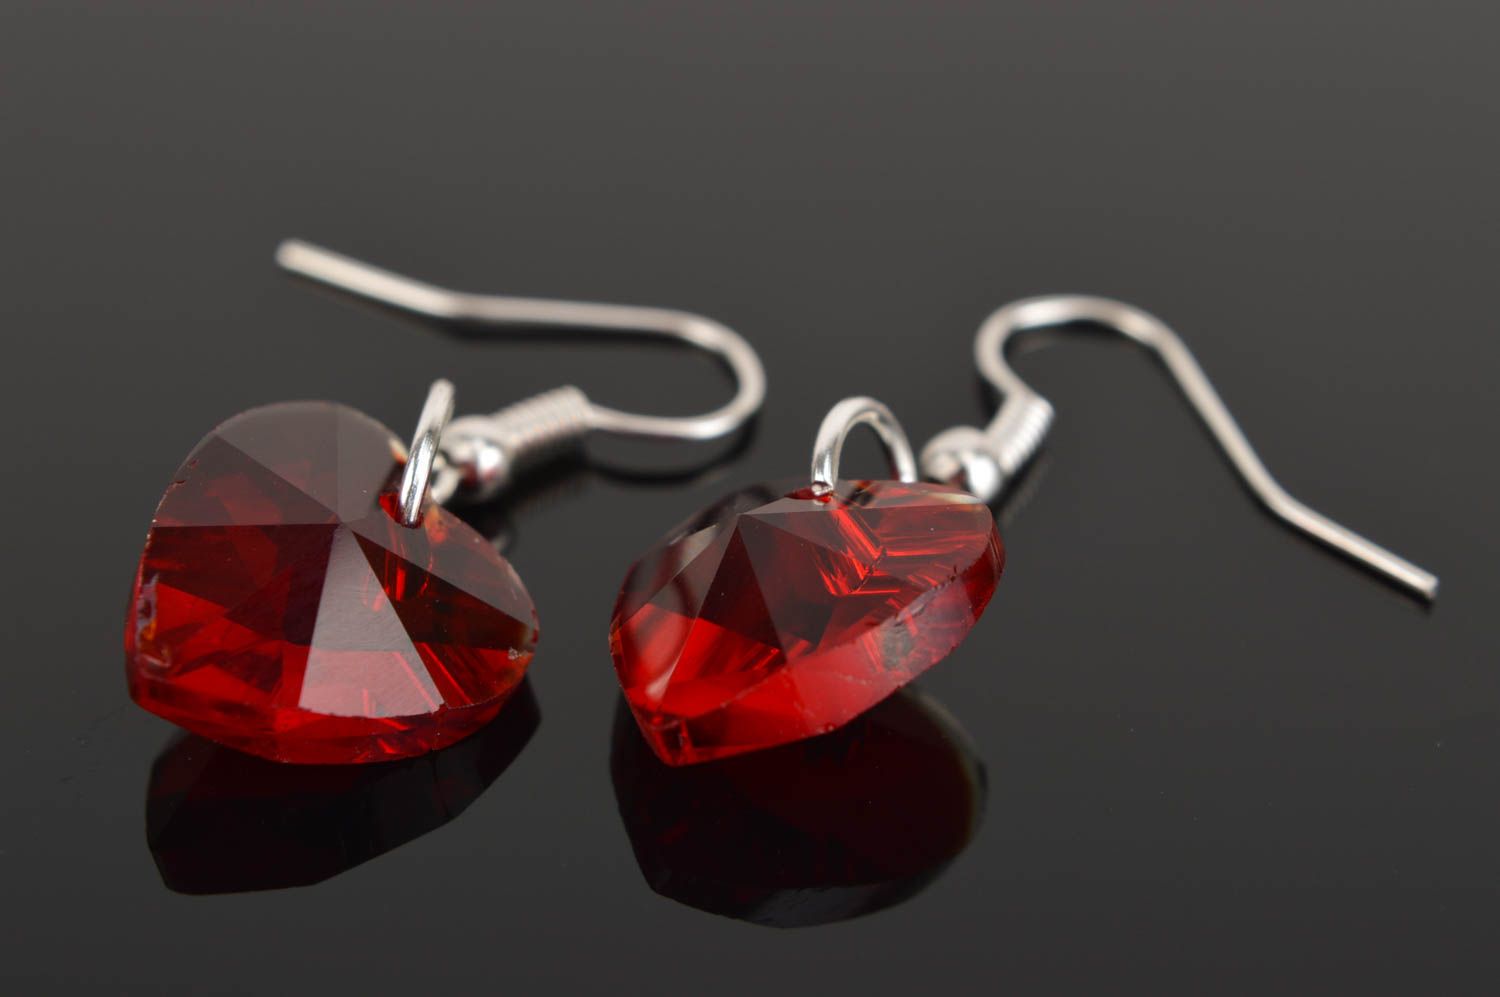 Handmade earrings designer earrings glass jewelry gift ideas unusual accessory photo 3